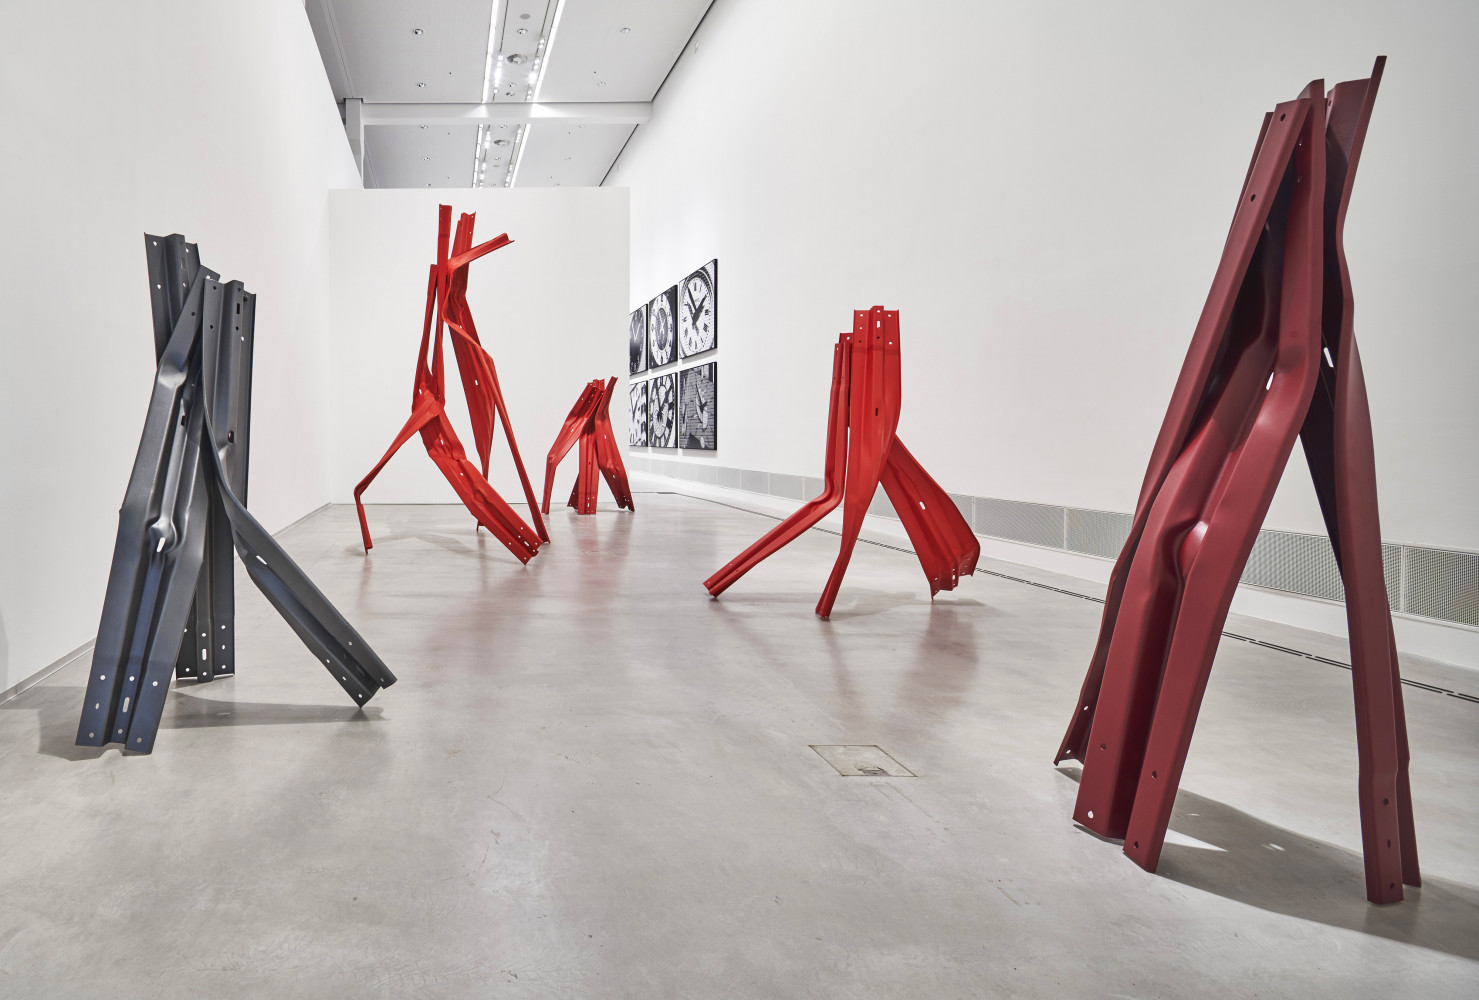 Bettina Pousttchi, ‘In Recent Years, Berlinische Galerie – Museum for Modern Art Berlin’, Installation view, Buchmann Galerie, 2019